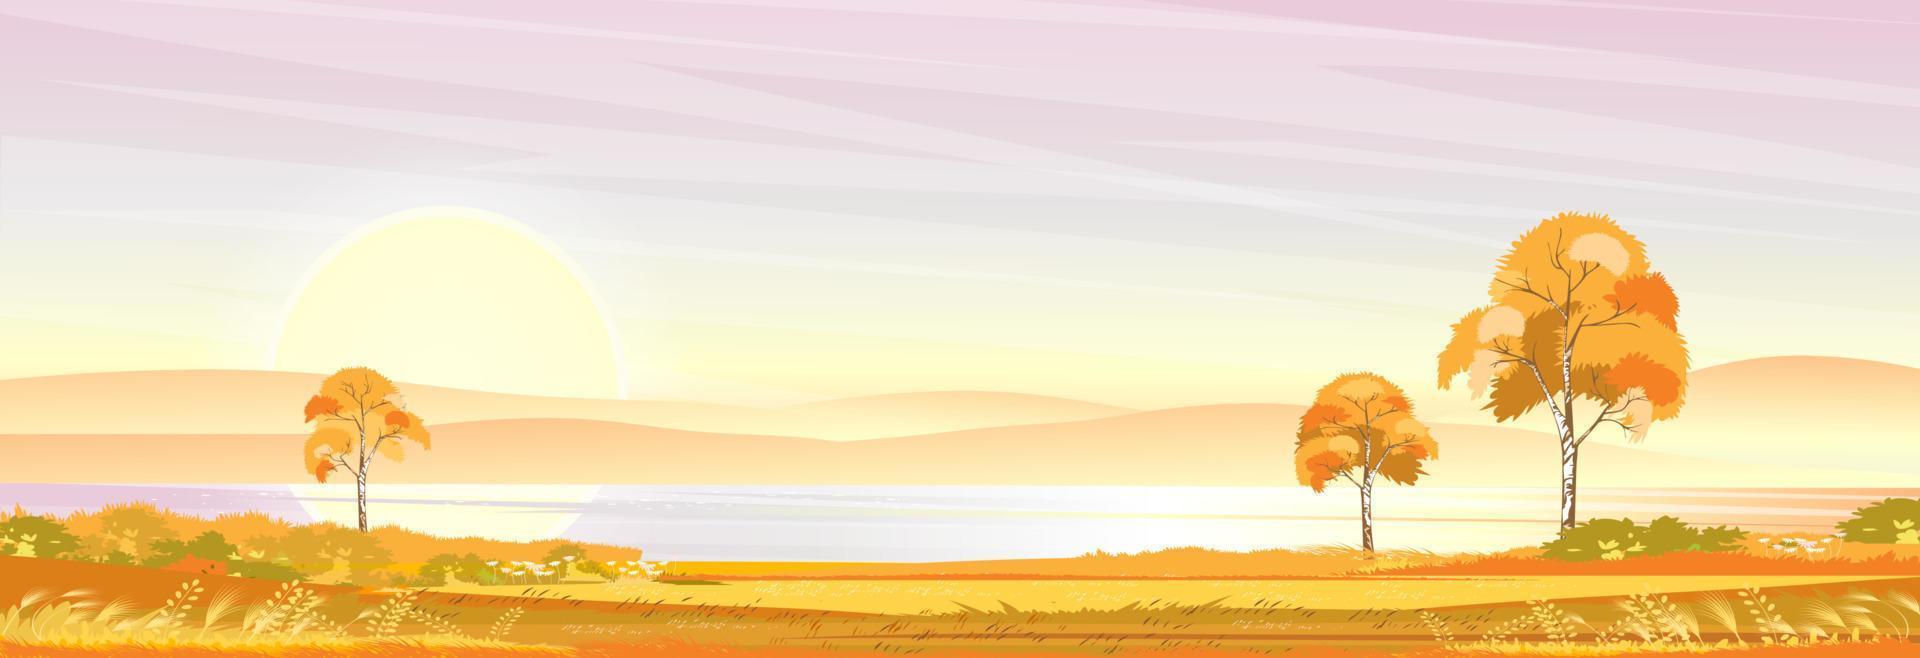 paesaggio autunnale al villaggio in riva al lago con campo in erba, montagna, cielo rosa e nuvole, vettore natura cartone animato scenario scenario della stagione autunnale, campagna rurale panoramica sul fiume con tramonto in serata